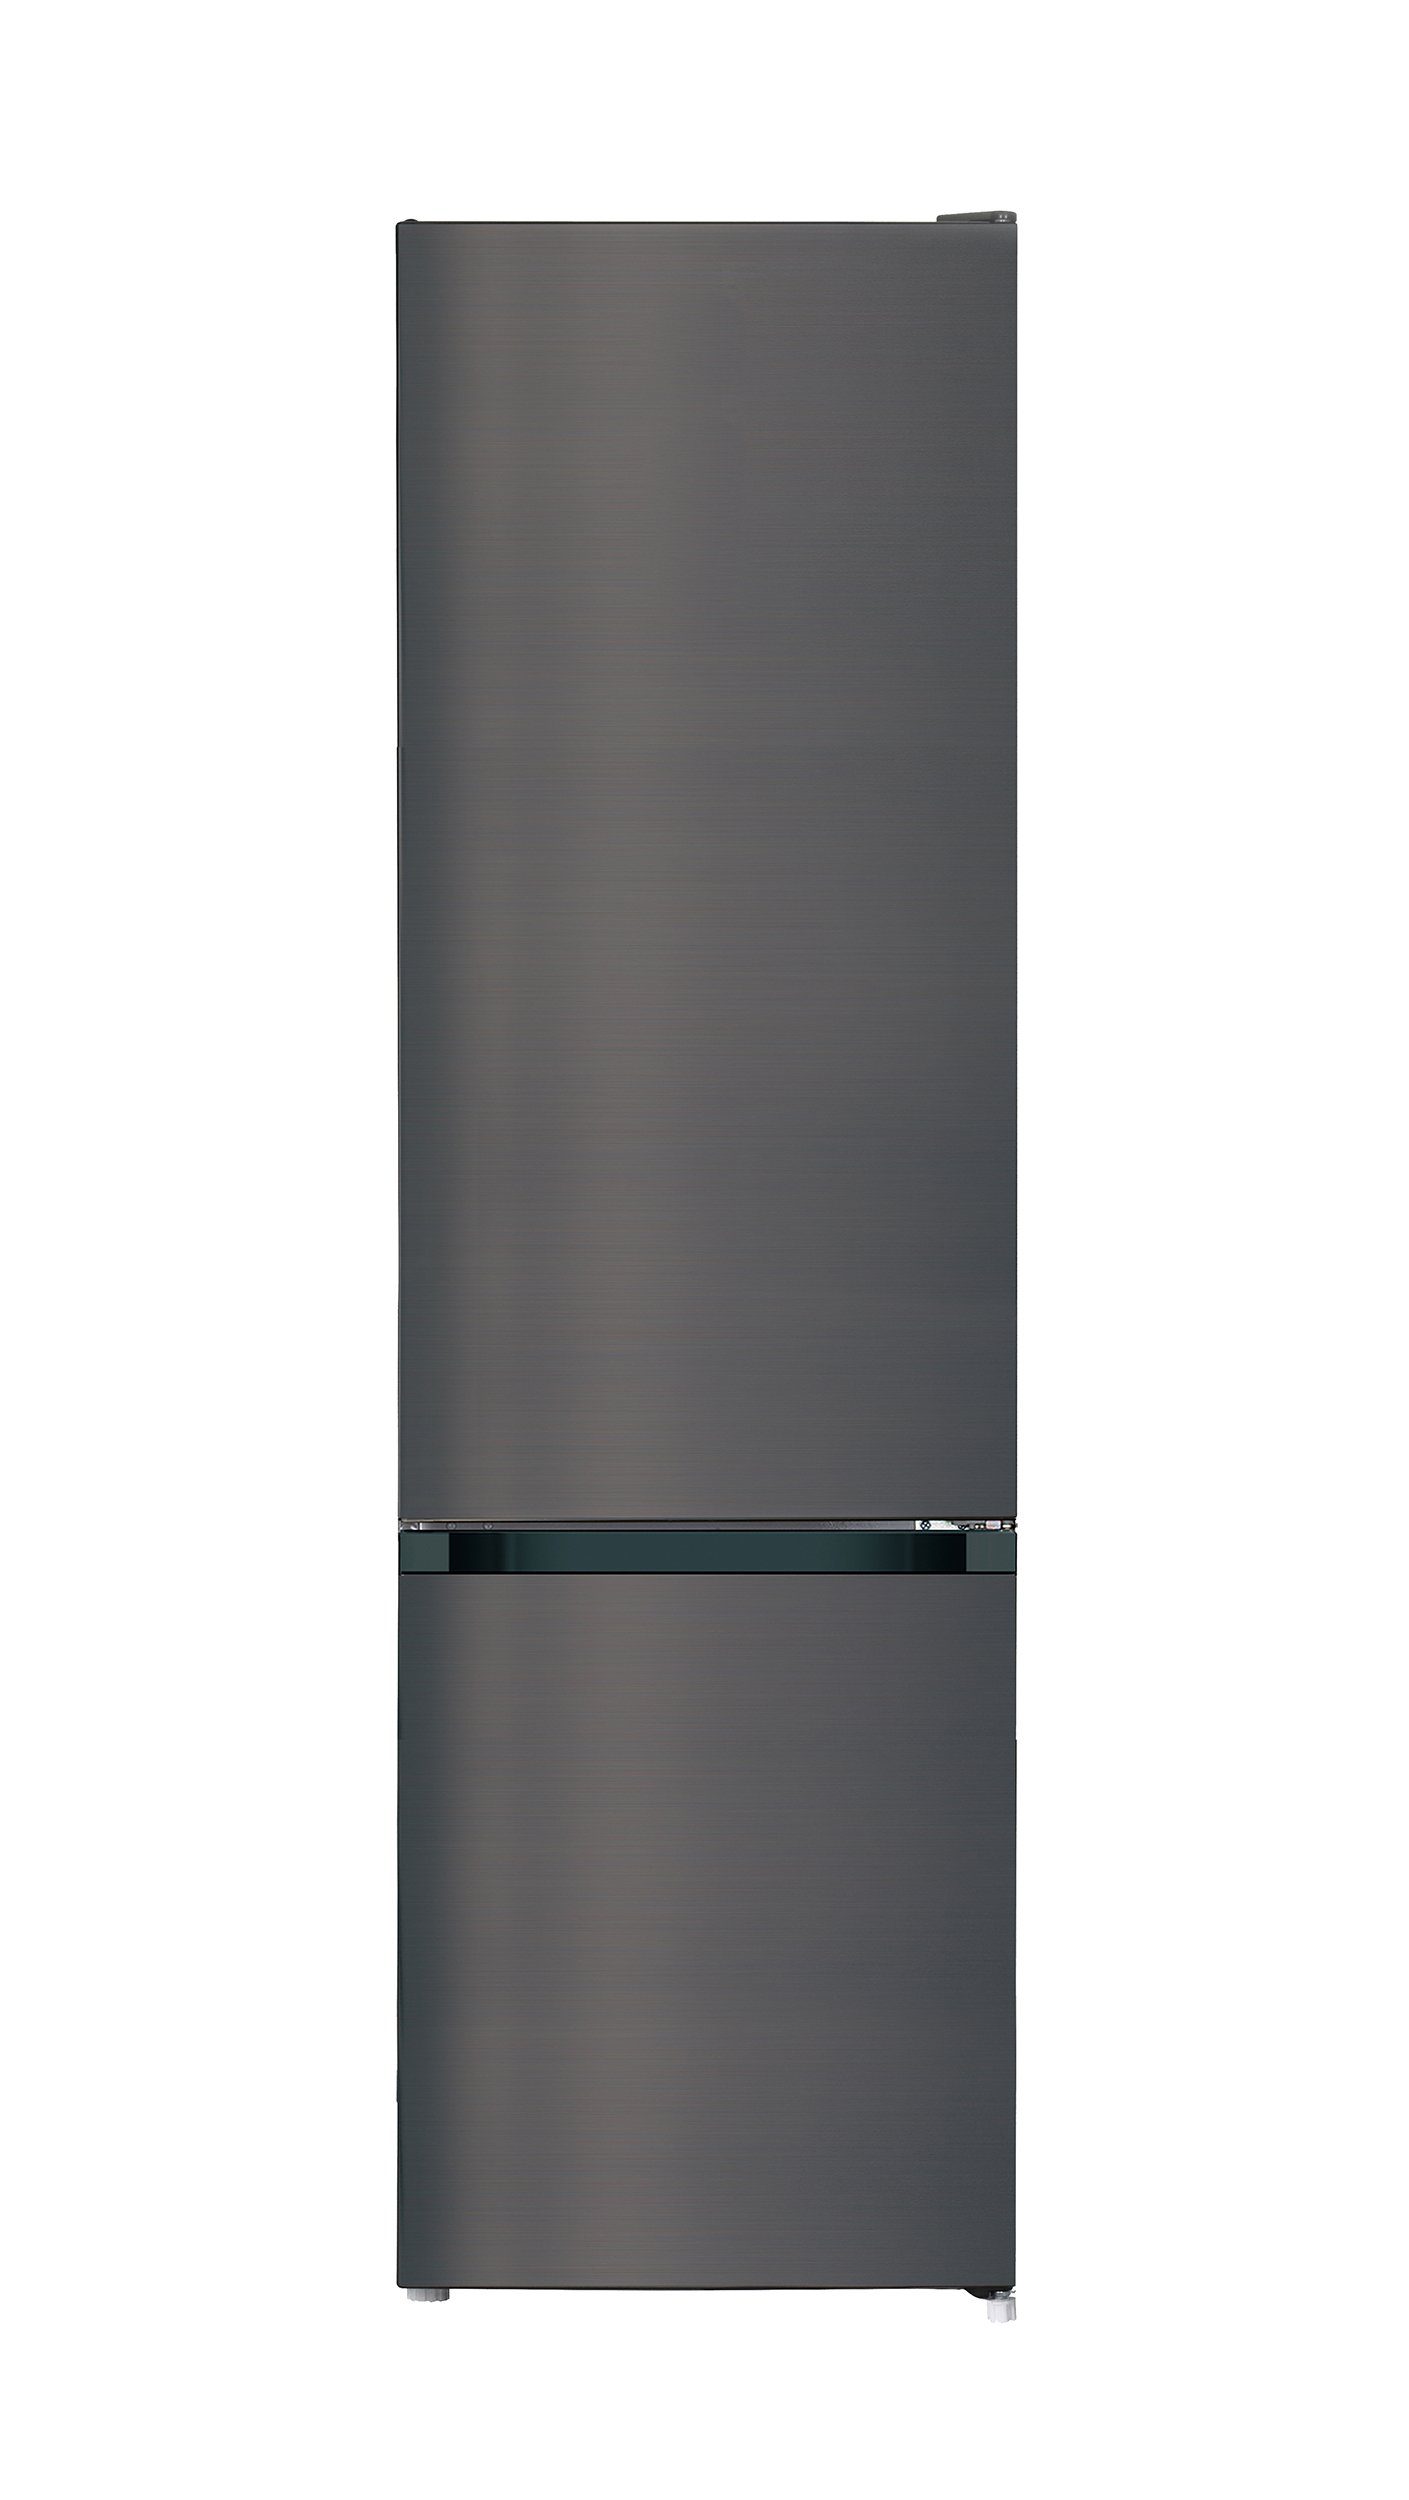 CHiQ Kühl-/Gefrierkombination FBM250NE42, 180 cm hoch, 54 cm breit,  Freistehender Kühlschrank mit Gefrierfach, 250